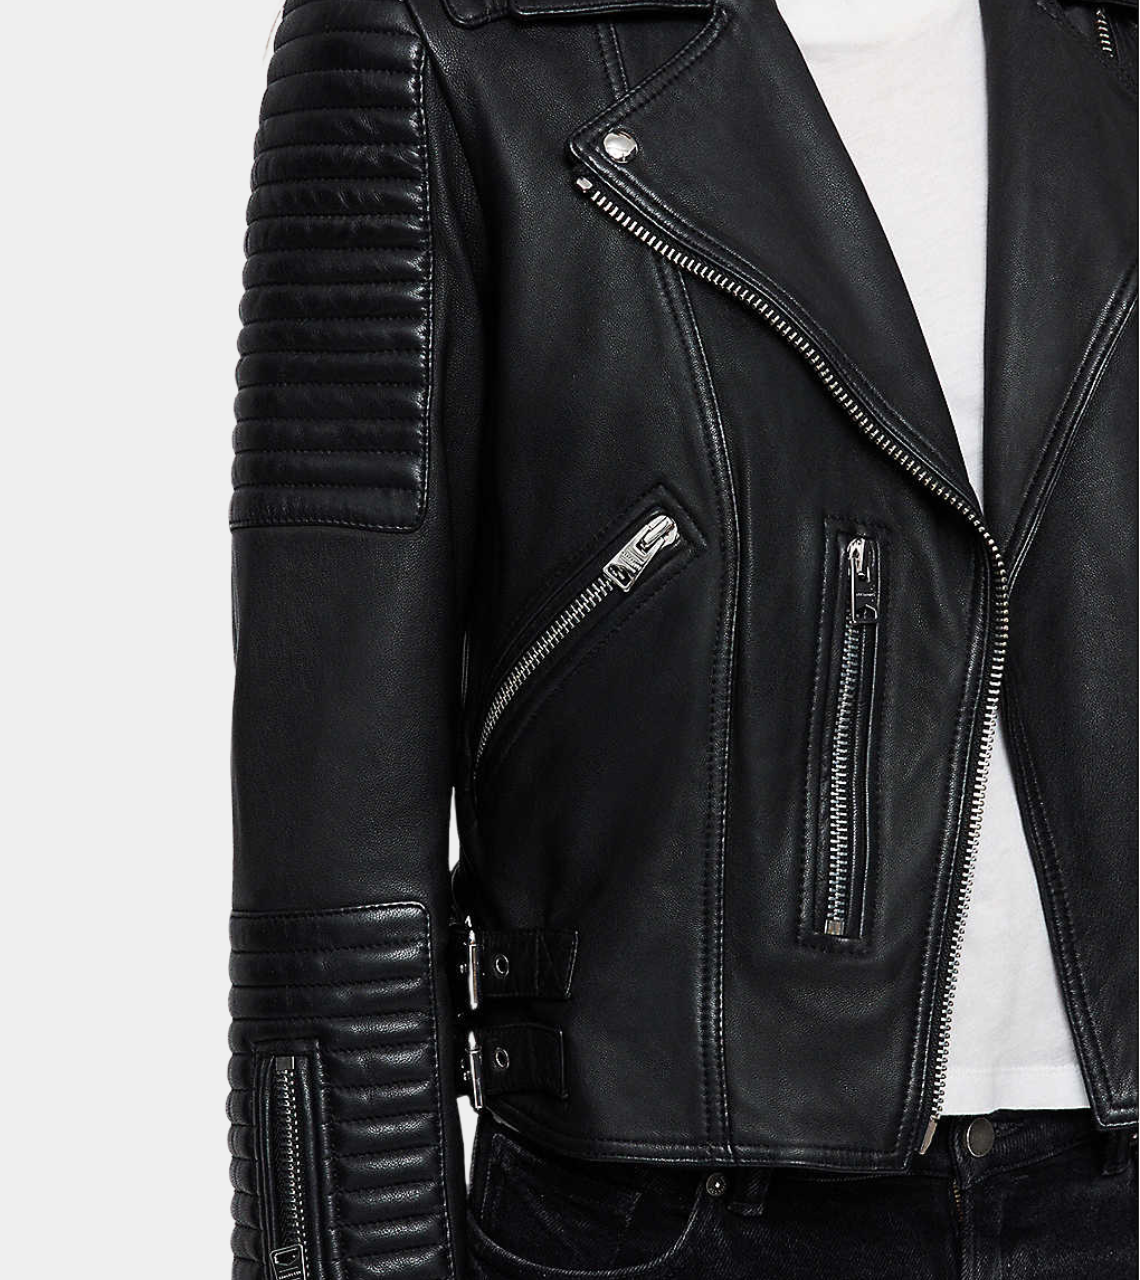 Black Sheepskin Women's Biker Leather Jacket Pocket